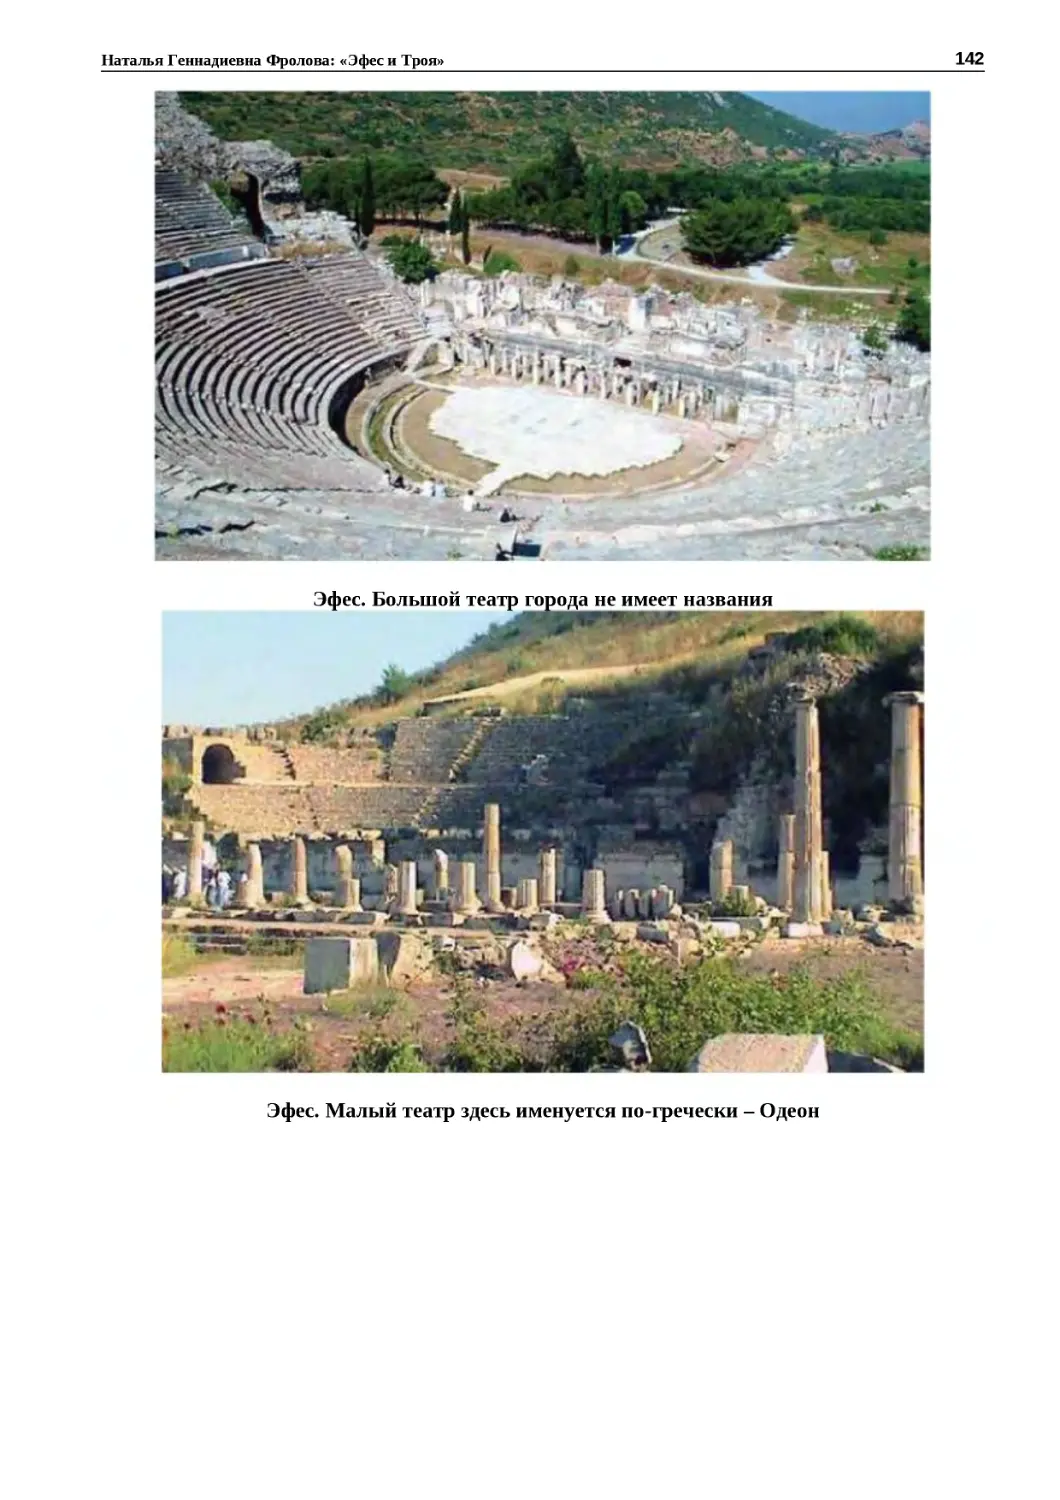 "
﻿Эфес. Большой театр города не имеет названи
"
﻿Эфес. Малый театр здесь именуется по‑гречески – Одео